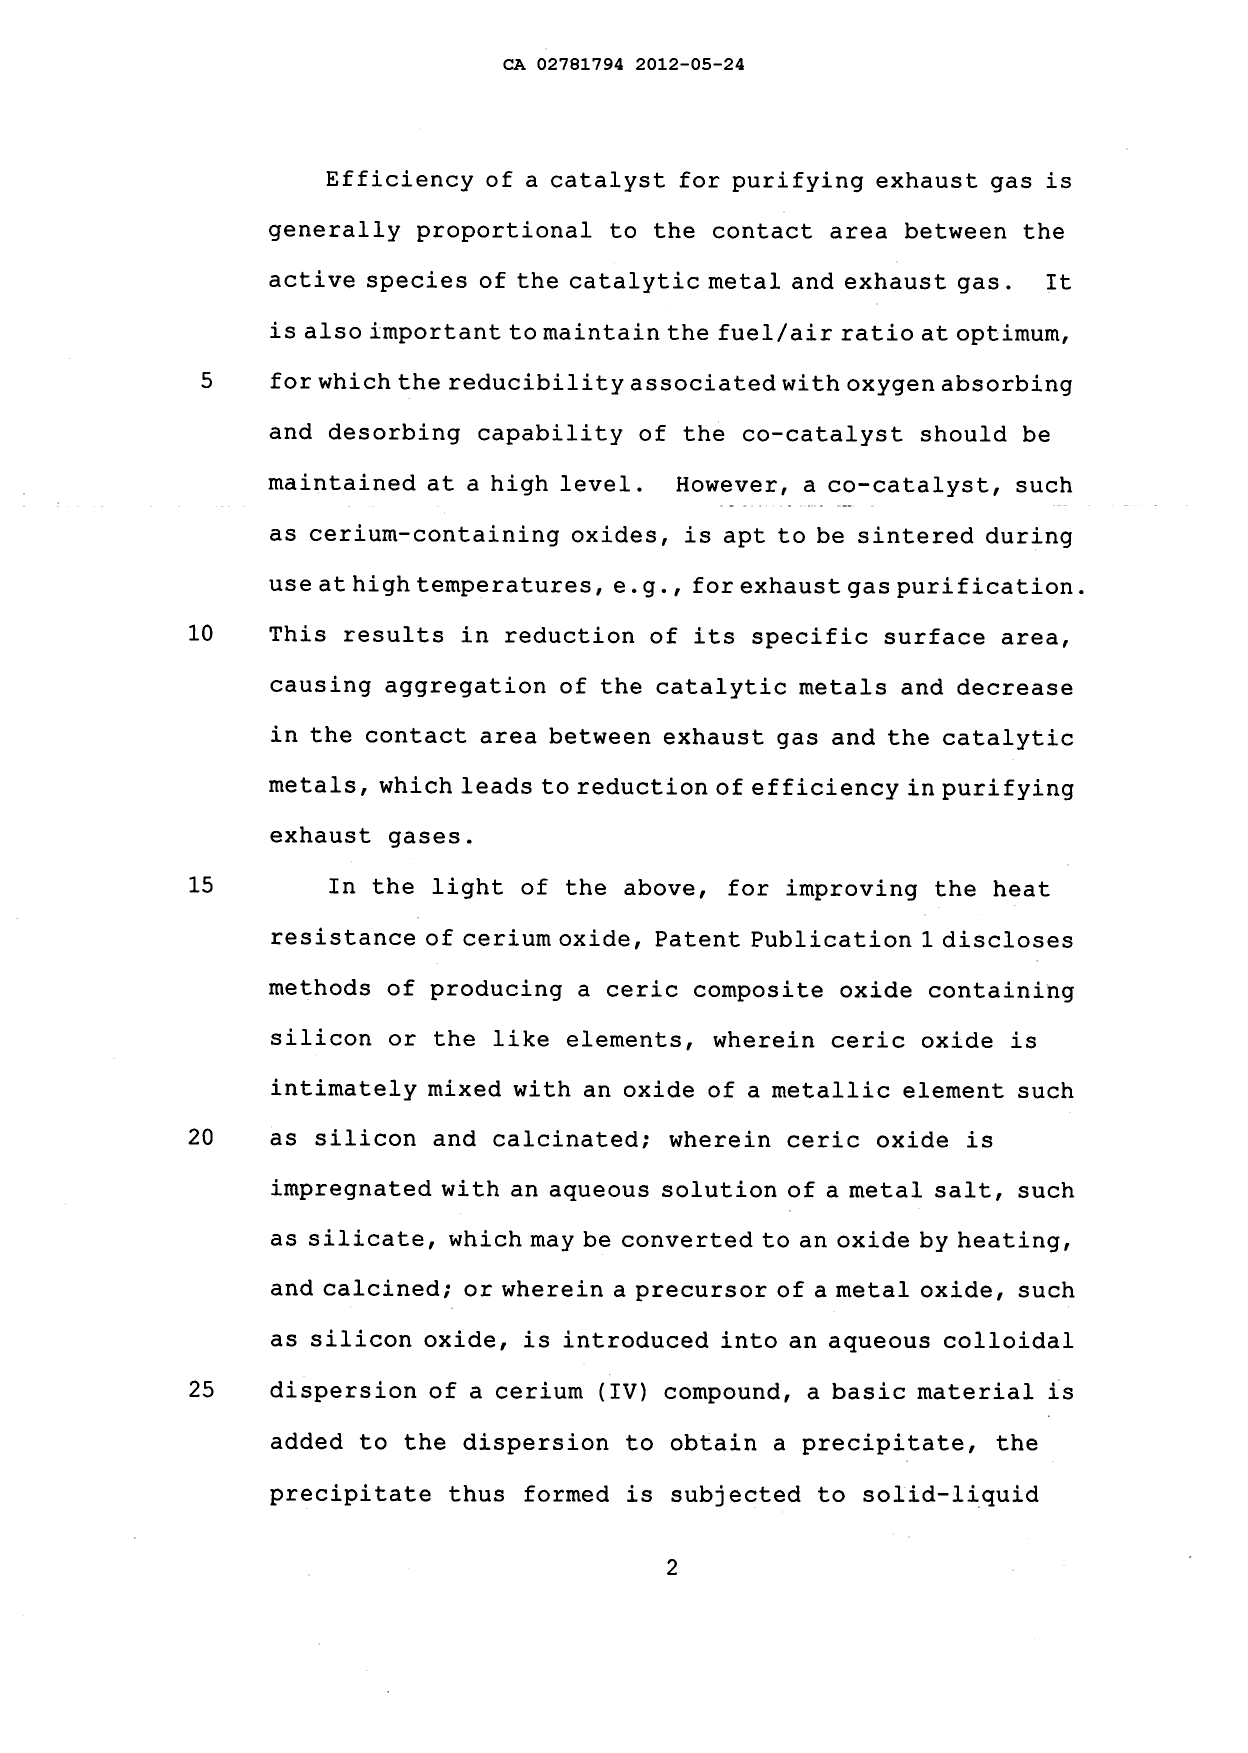 Canadian Patent Document 2781794. Description 20120524. Image 2 of 28